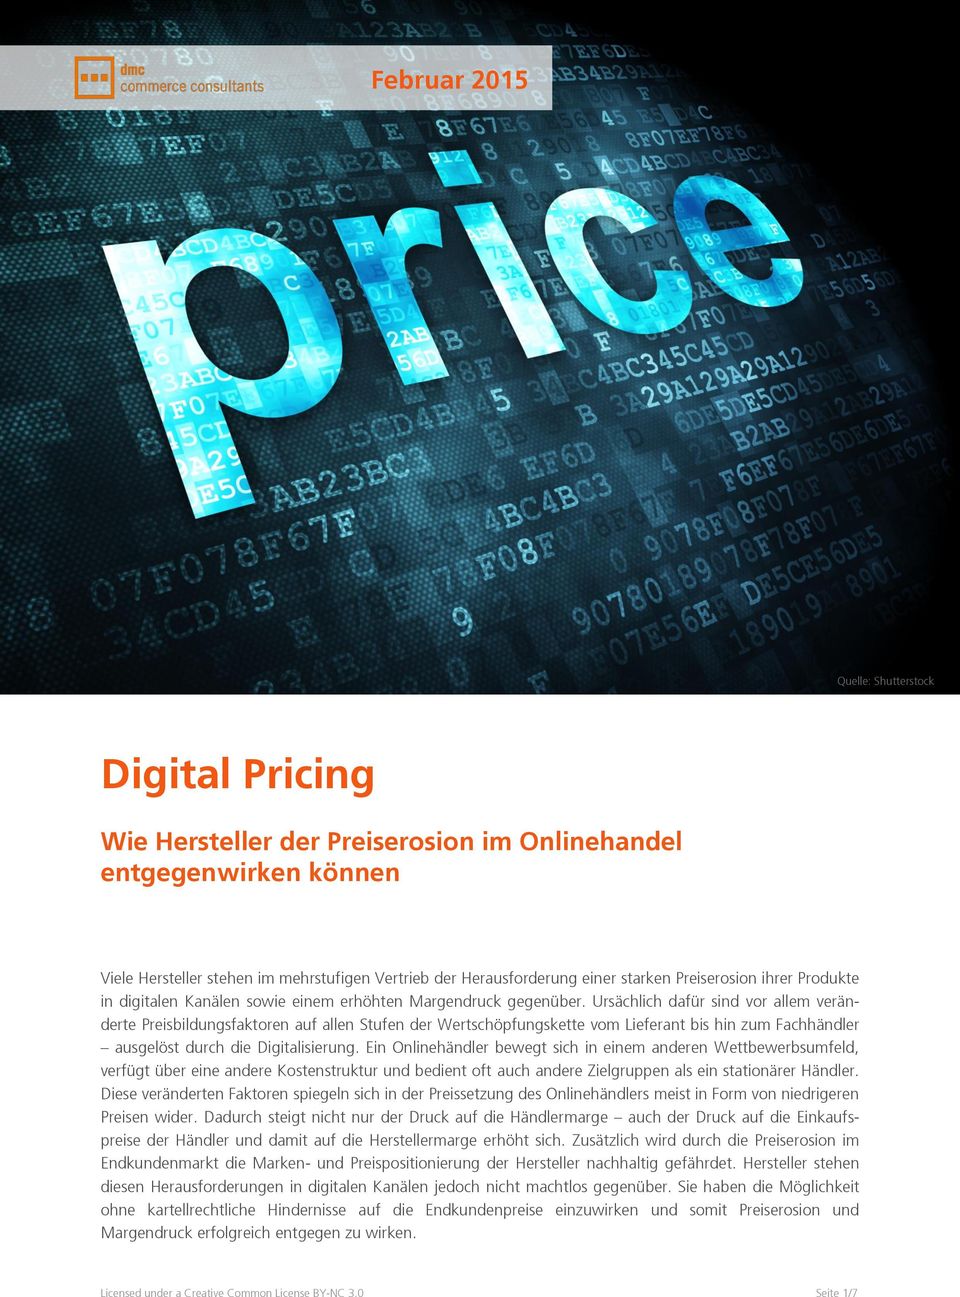 Ursächlich dafür sind vor allem veränderte Preisbildungsfaktoren auf allen Stufen der Wertschöpfungskette vom Lieferant bis hin zum Fachhändler ausgelöst durch die Digitalisierung.